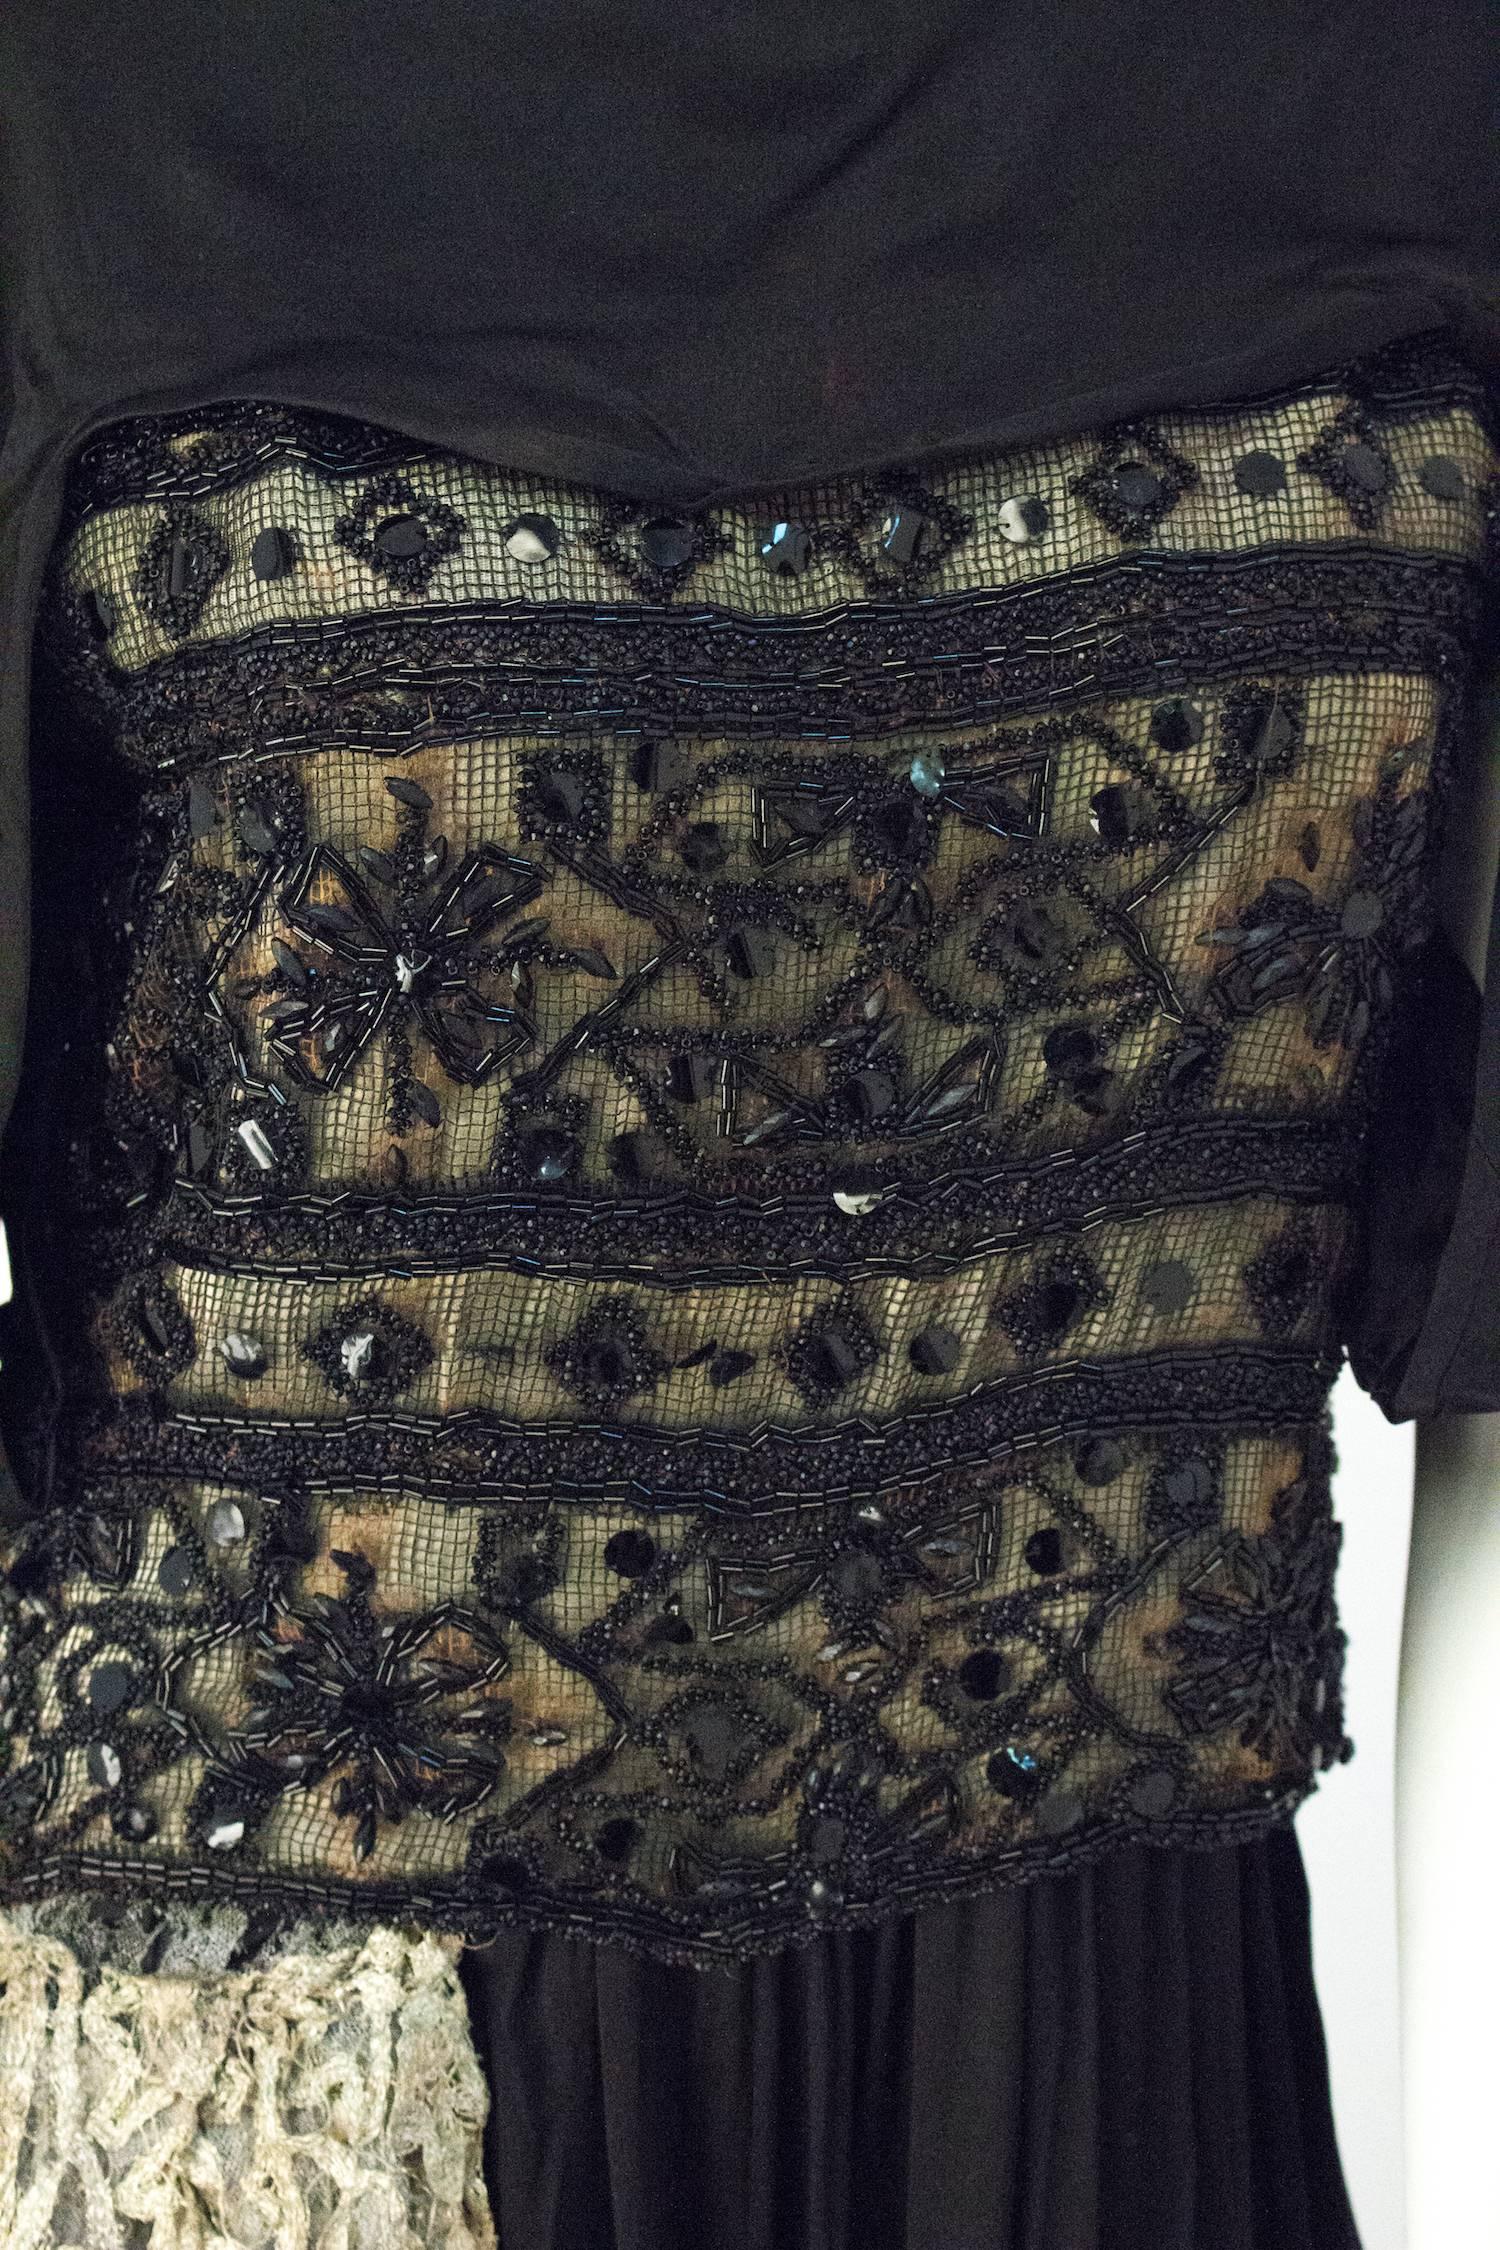 Robe de soirée édouardienne en soie noire avec dentelle lamée et perlage argentés. La jupe se noue à la cheville sur le devant gauche de la jupe. Embellissement en dentelle lamée argentée le long de la cuisse droite, avec des ornements en pompons